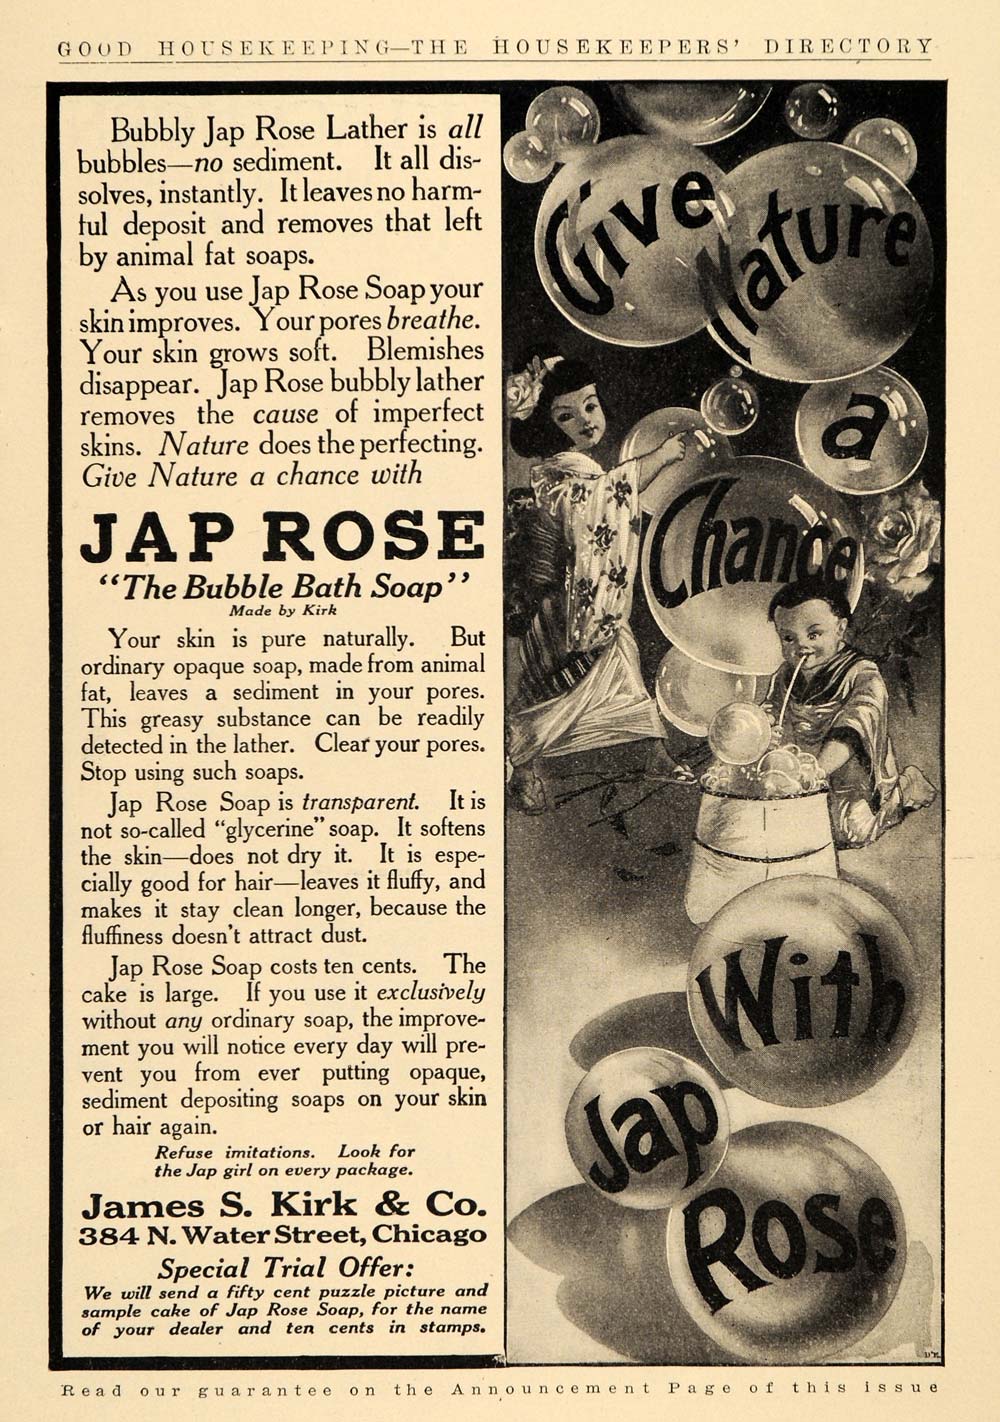 1909 Ad James S Kirk & Co. Jap Rose Bubble Bath Soap - ORIGINAL ADVERTISING GH3